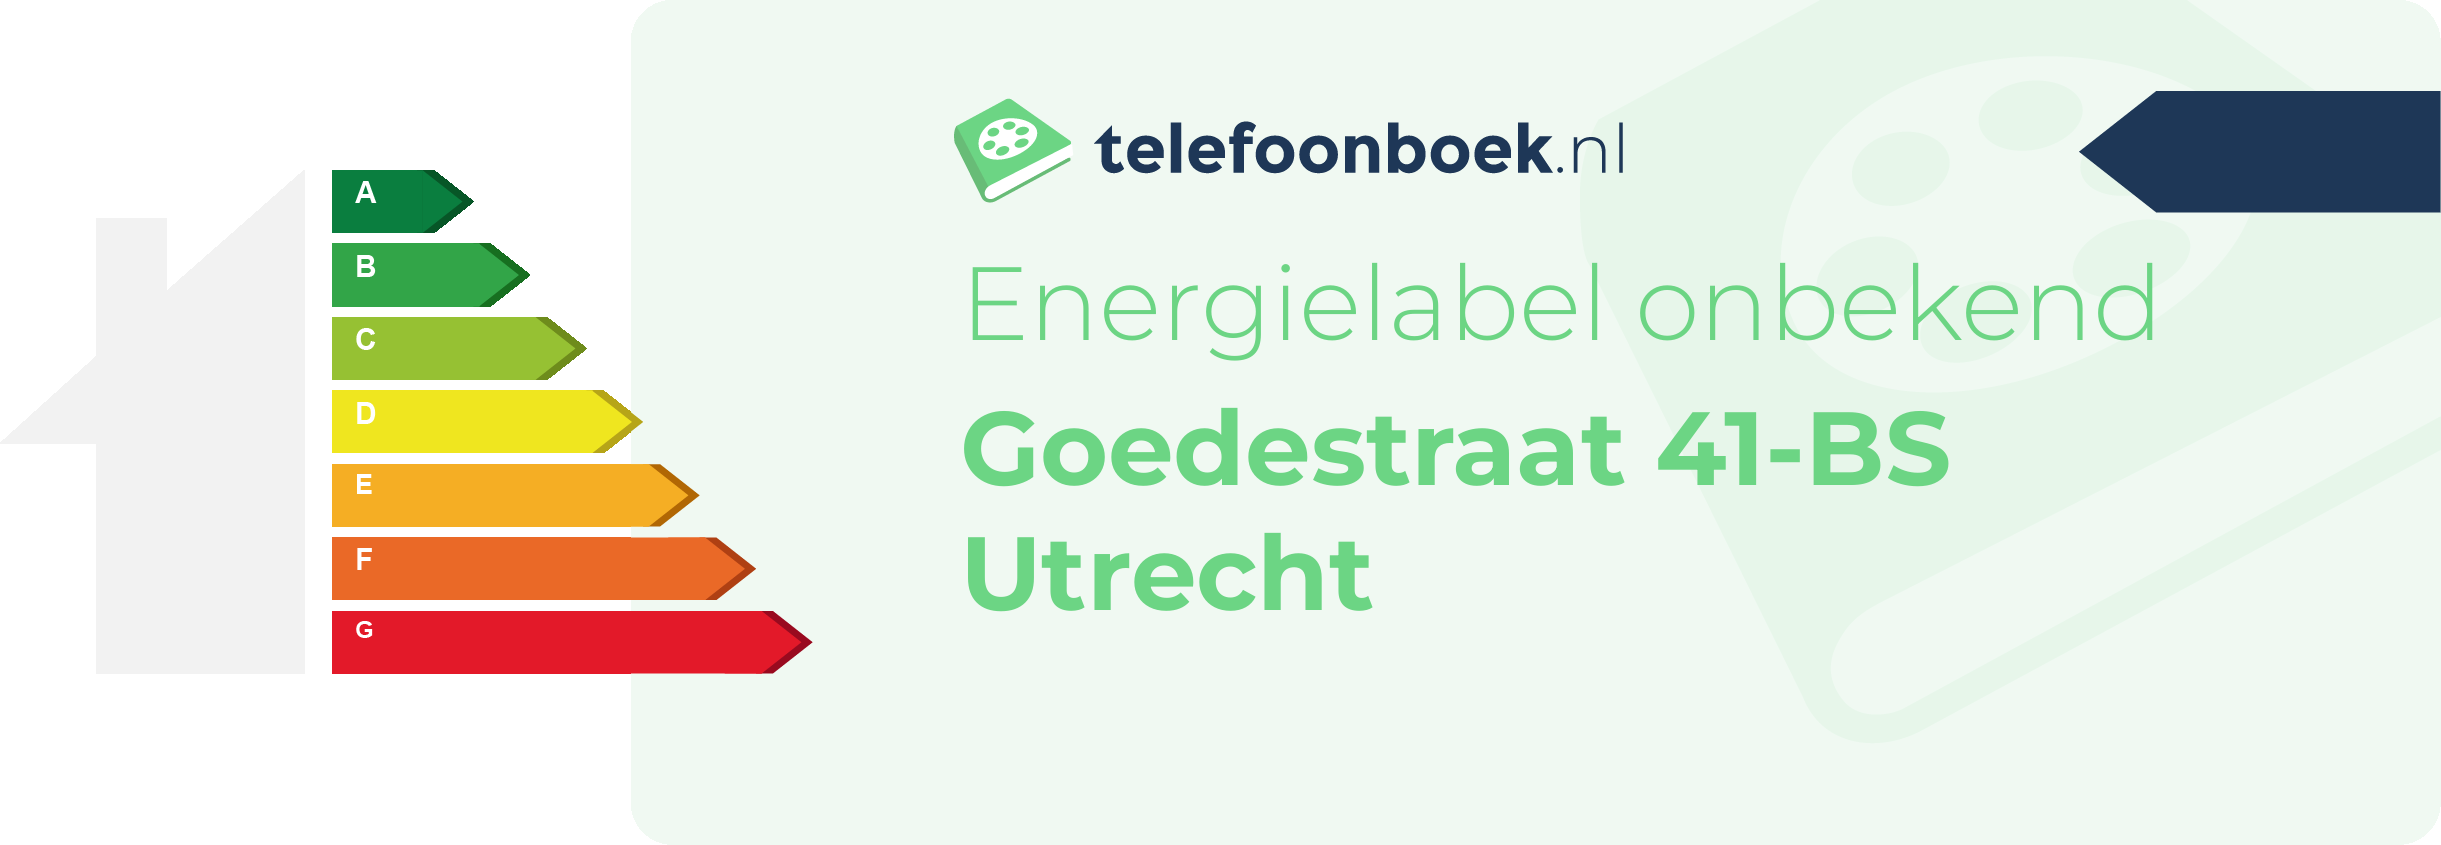 Energielabel Goedestraat 41-BS Utrecht